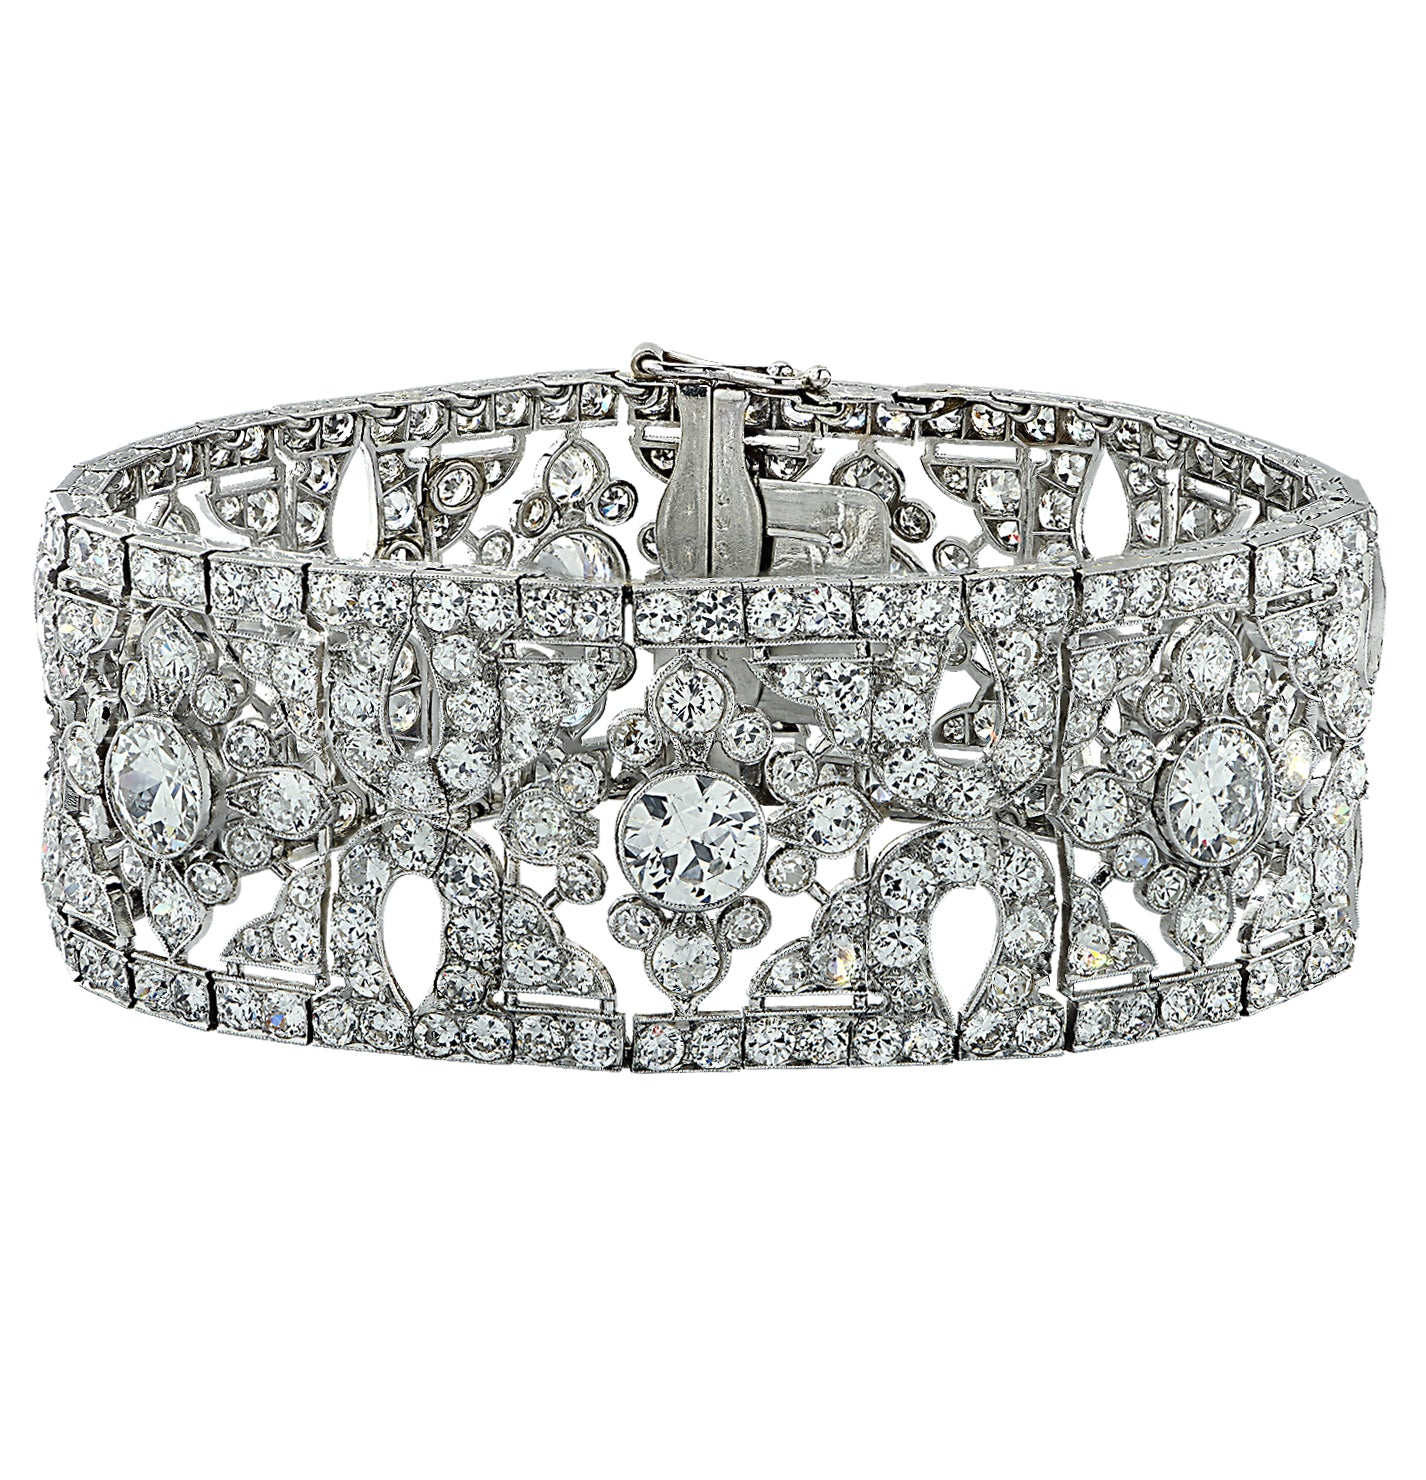 French Belle Époque Cartier 40 Carat Old European Cut Diamond Bracelet -  vividdiamonds